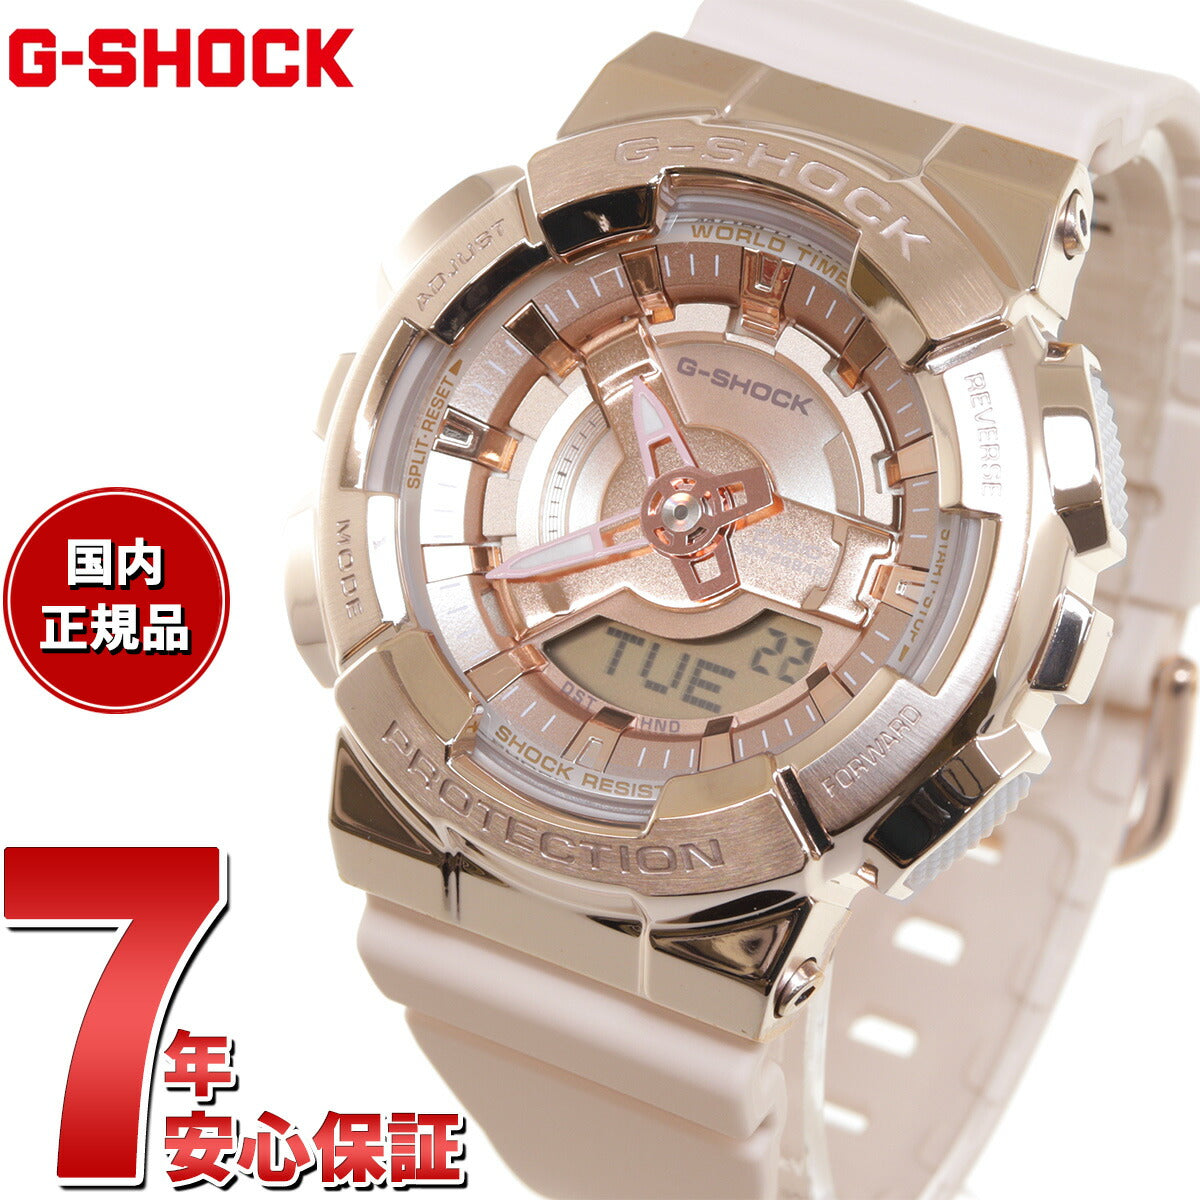 G-SHOCK カシオ Gショック CASIO アナデジ 腕時計 メンズ レディース GM-S110PG-4AJF ピンクゴールド ピンクベージュ  メタルカバー コンパクトサイズ